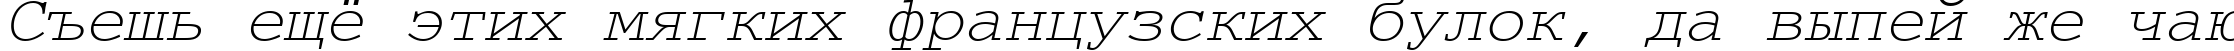 Пример написания шрифтом CourierMCY Oblique текста на русском